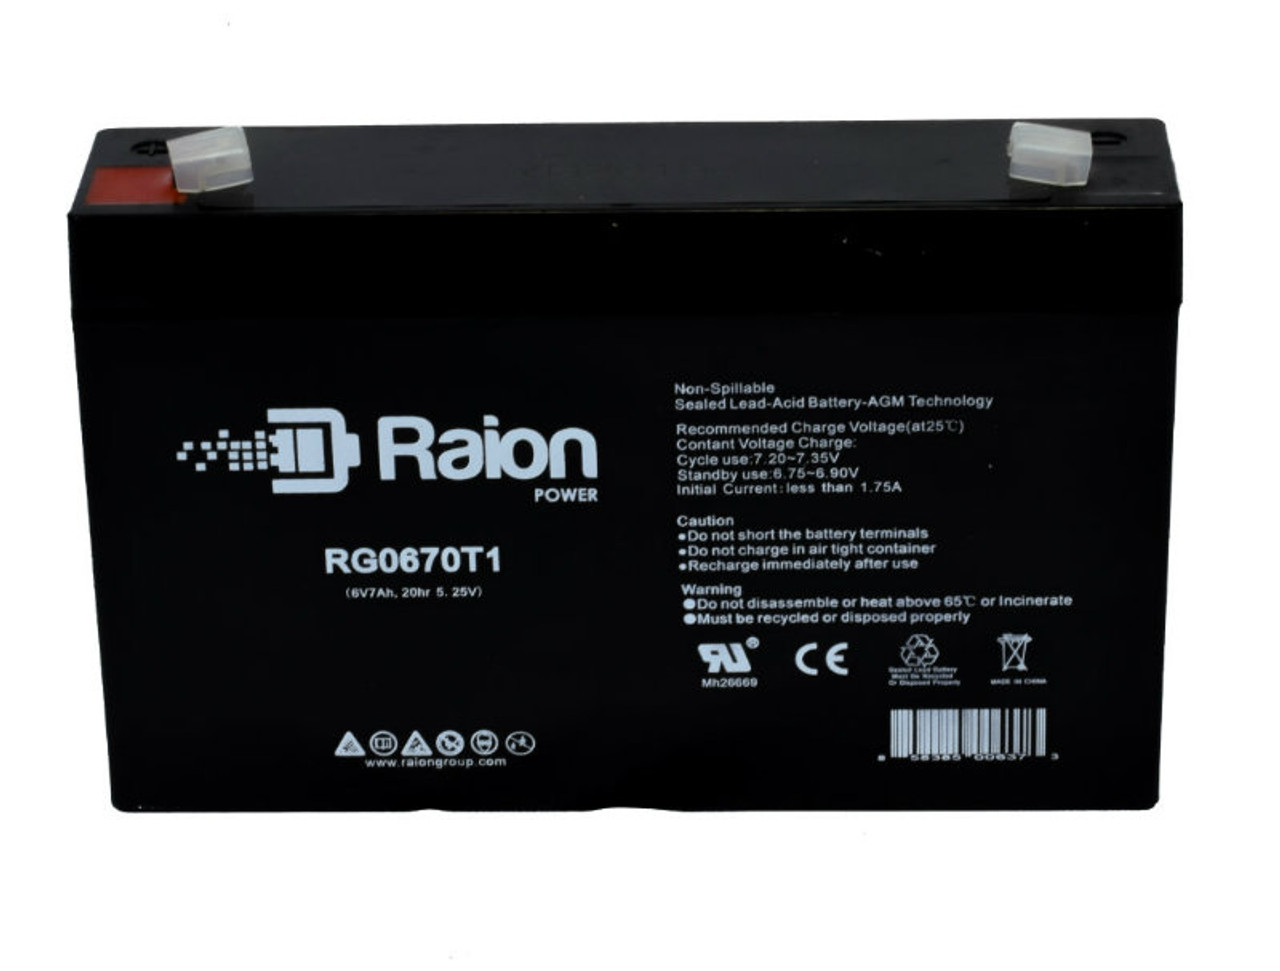 Raion Power RG0670T1 SLA Battery for Ultracell UL7.2-6 OEM Battery